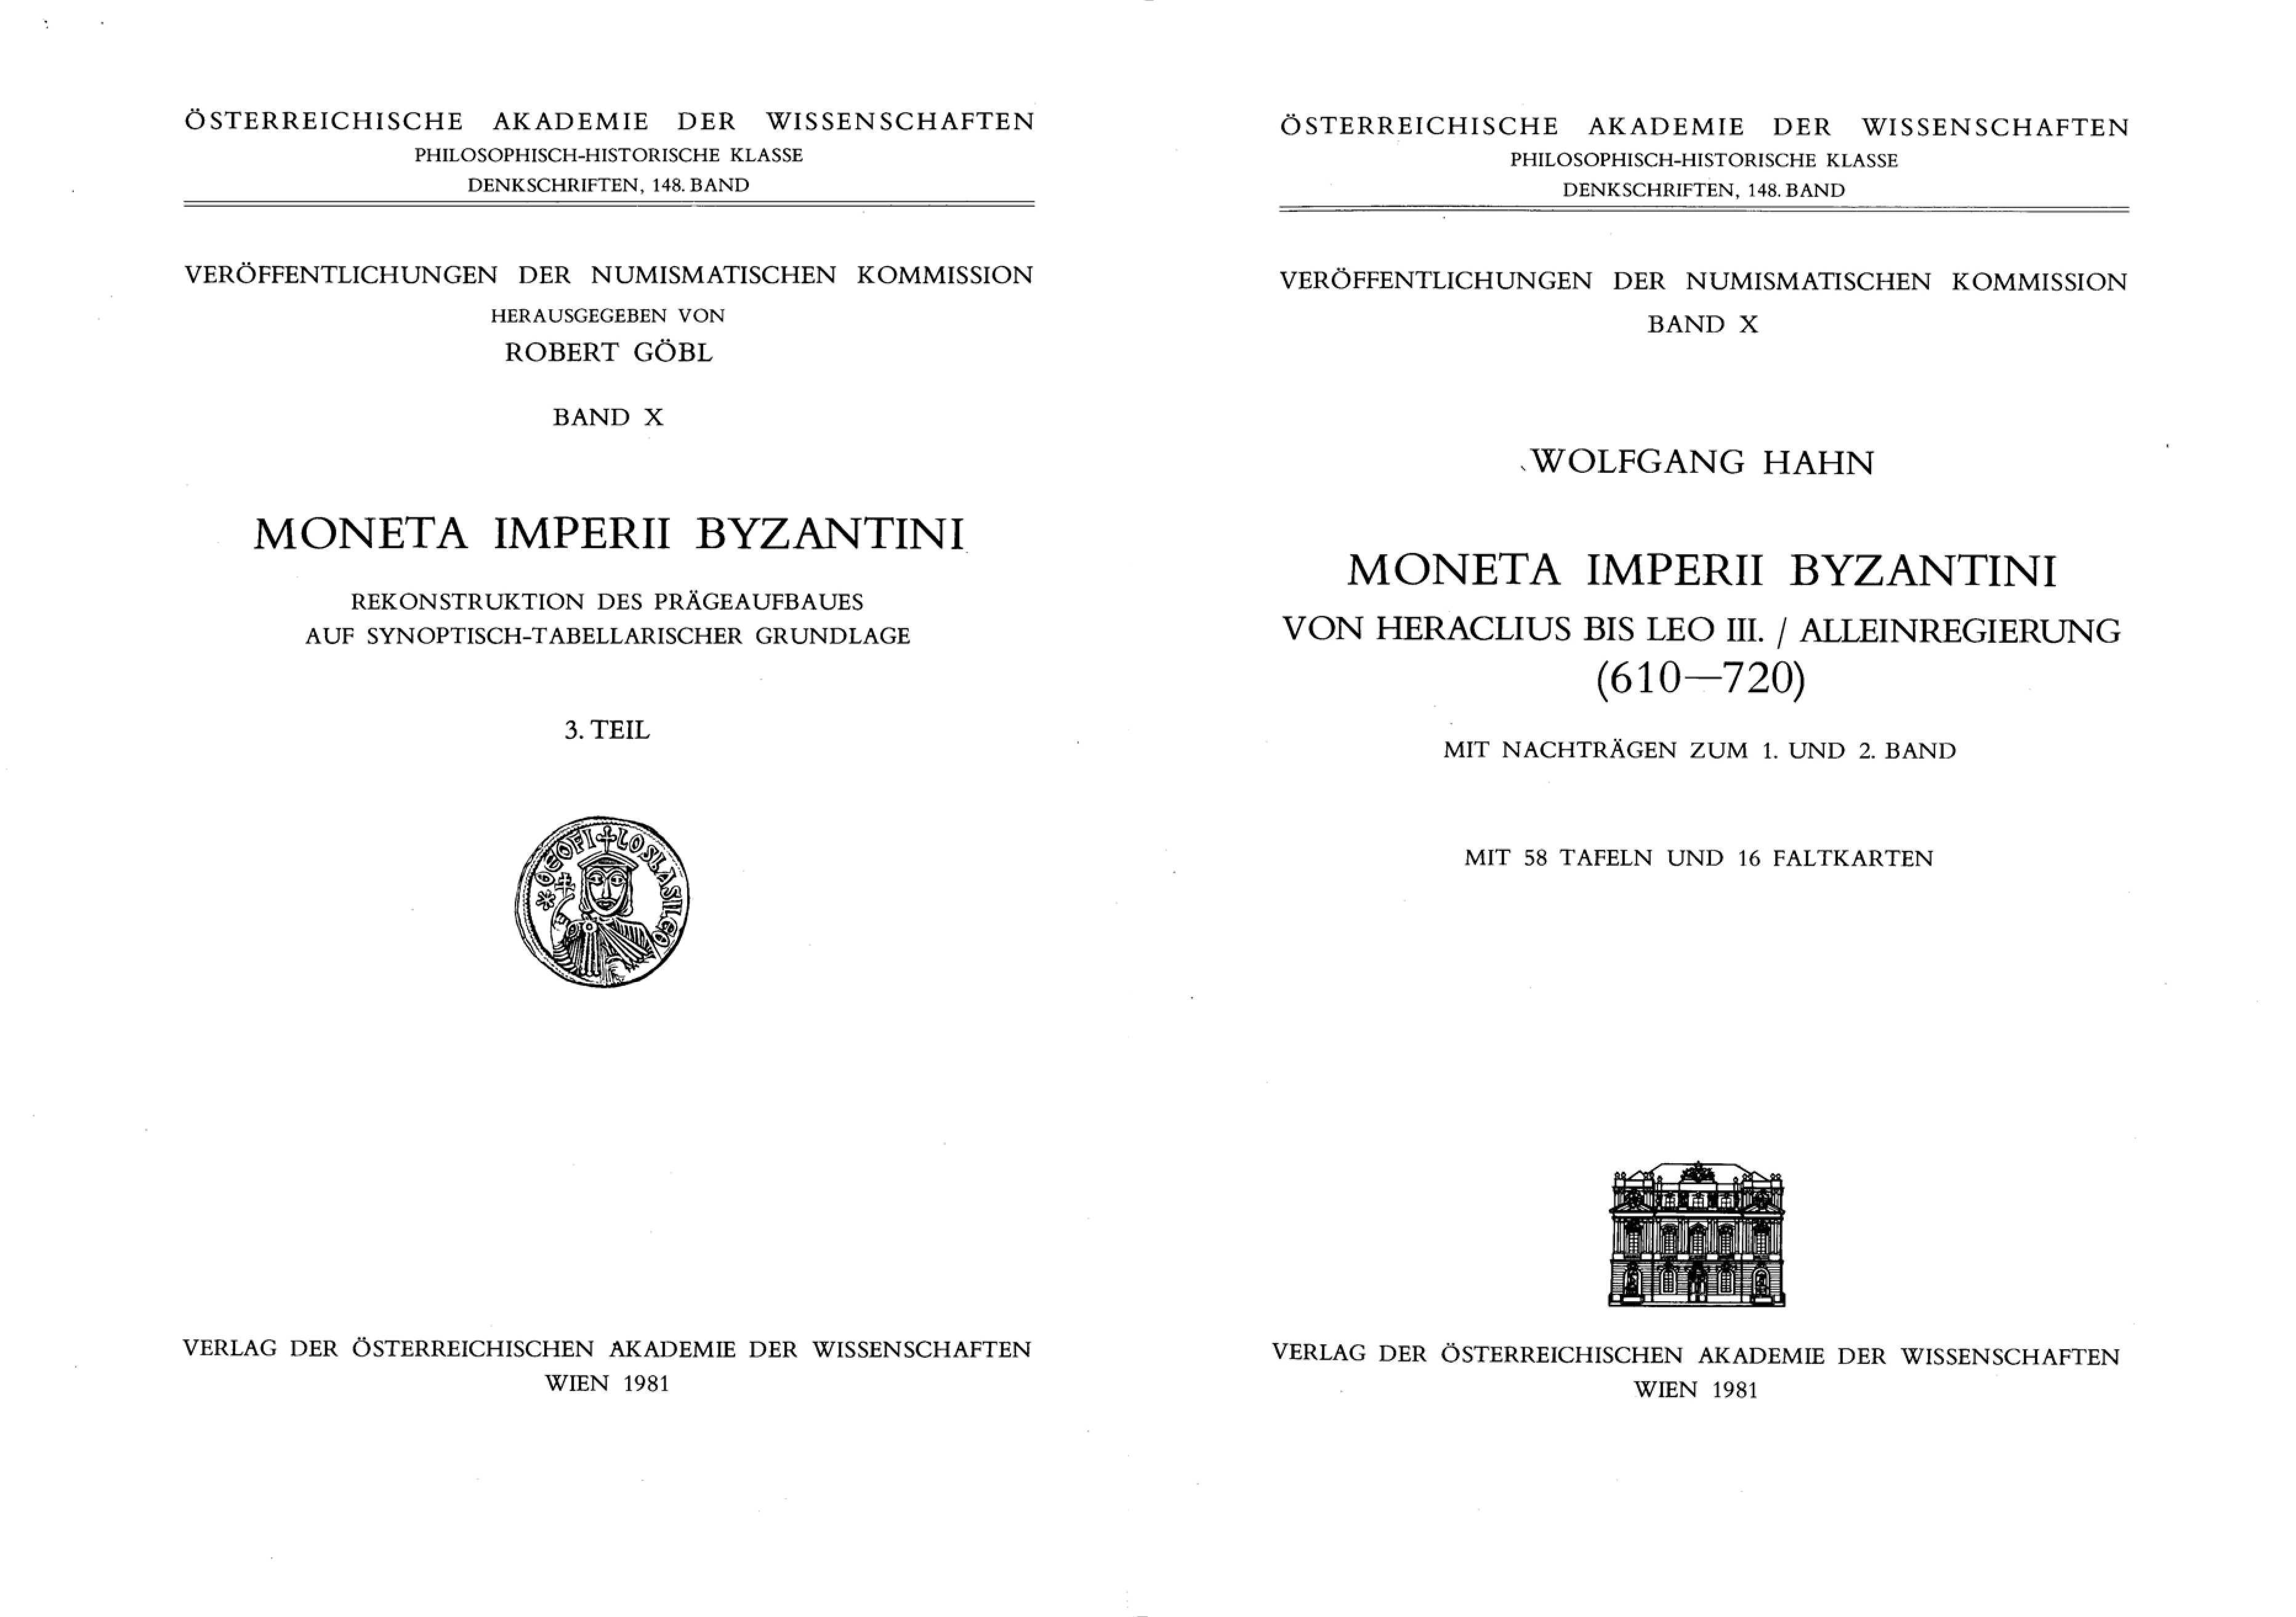 Moneta Imperii Byzantini - Wolfgang Hahn - Band 3